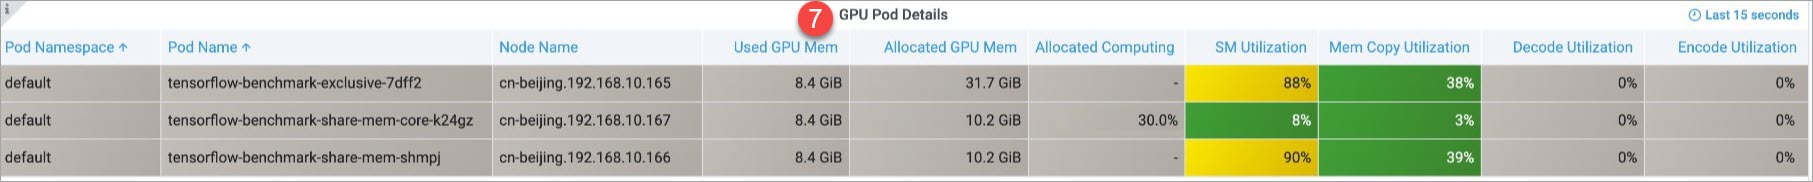 GPU Pod Details